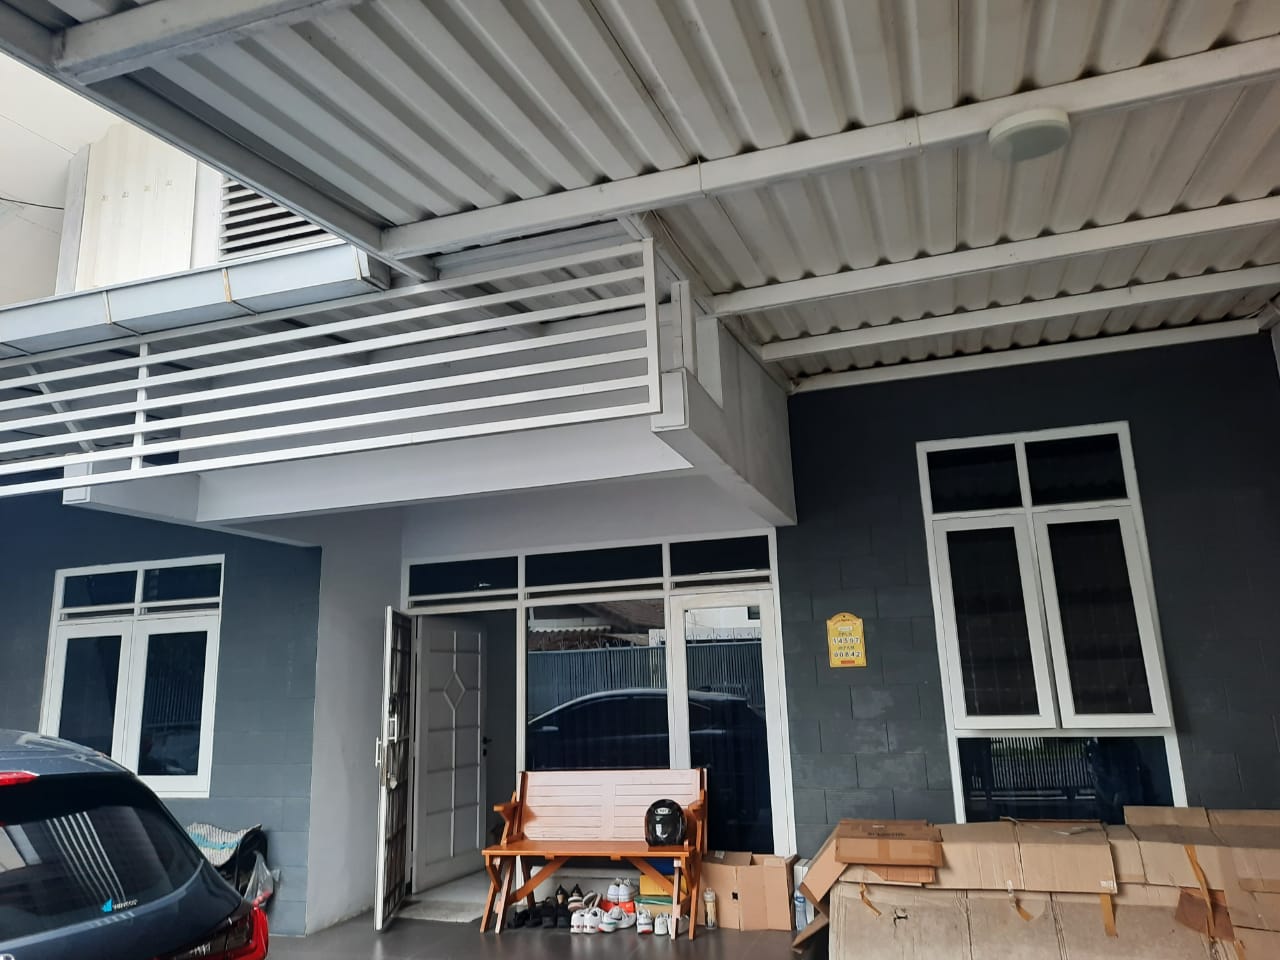 Dijual Rumah Minimalis di Batununggal Permai Bandung